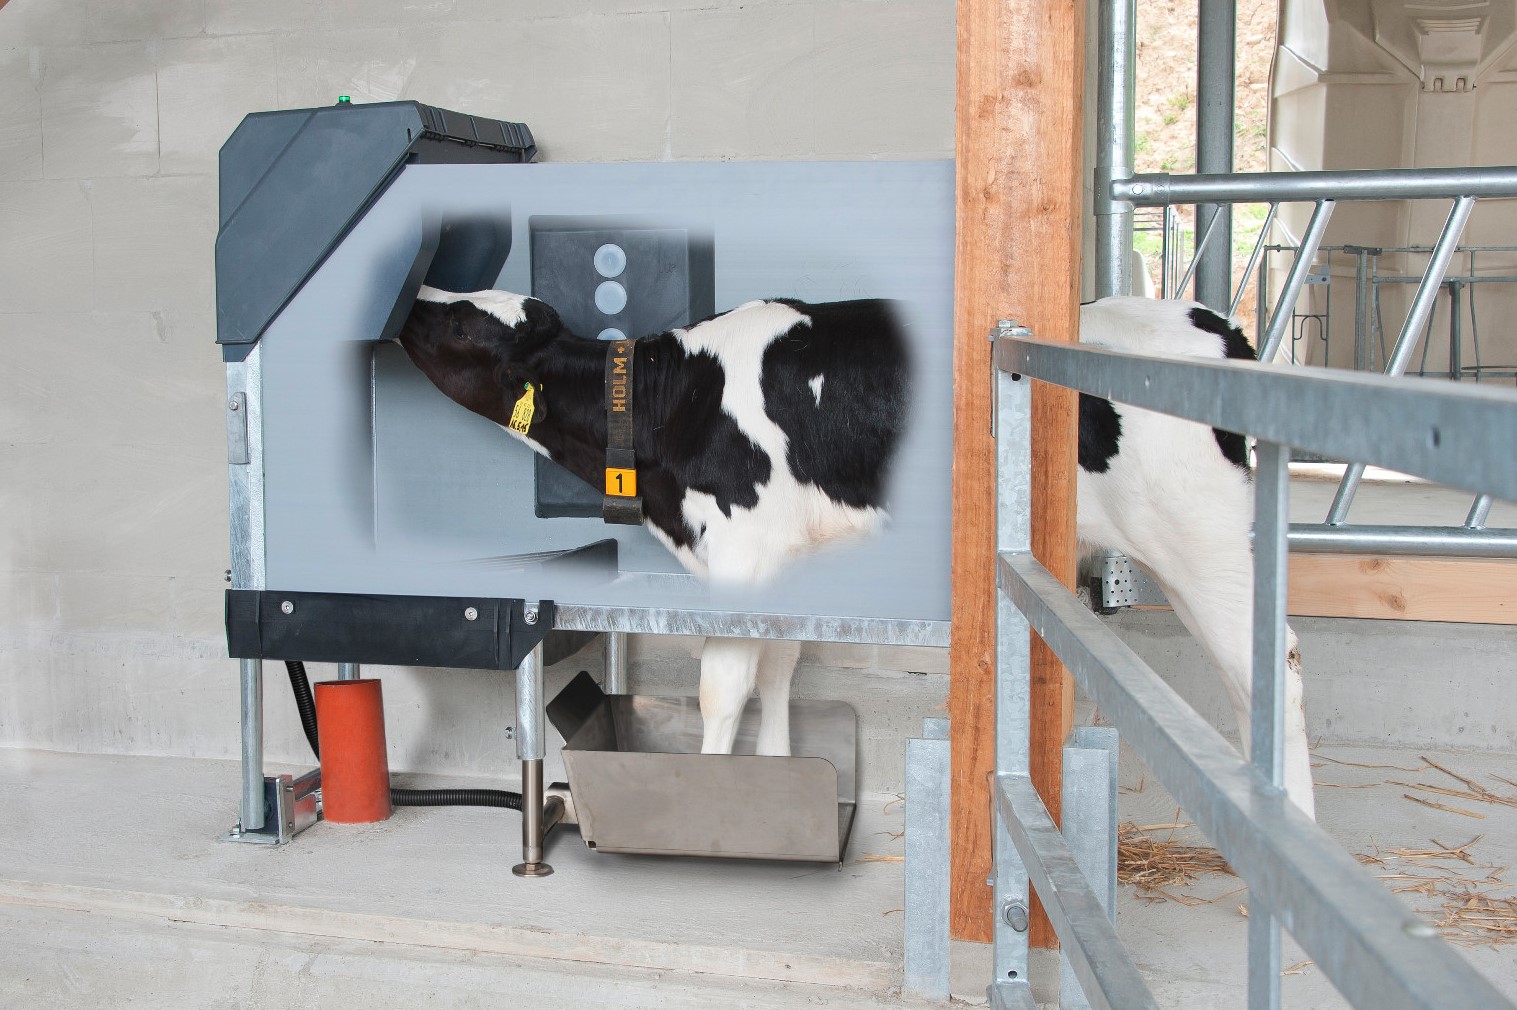 Un vitello beve nella stazione igienica con bilancia a piede anteriore